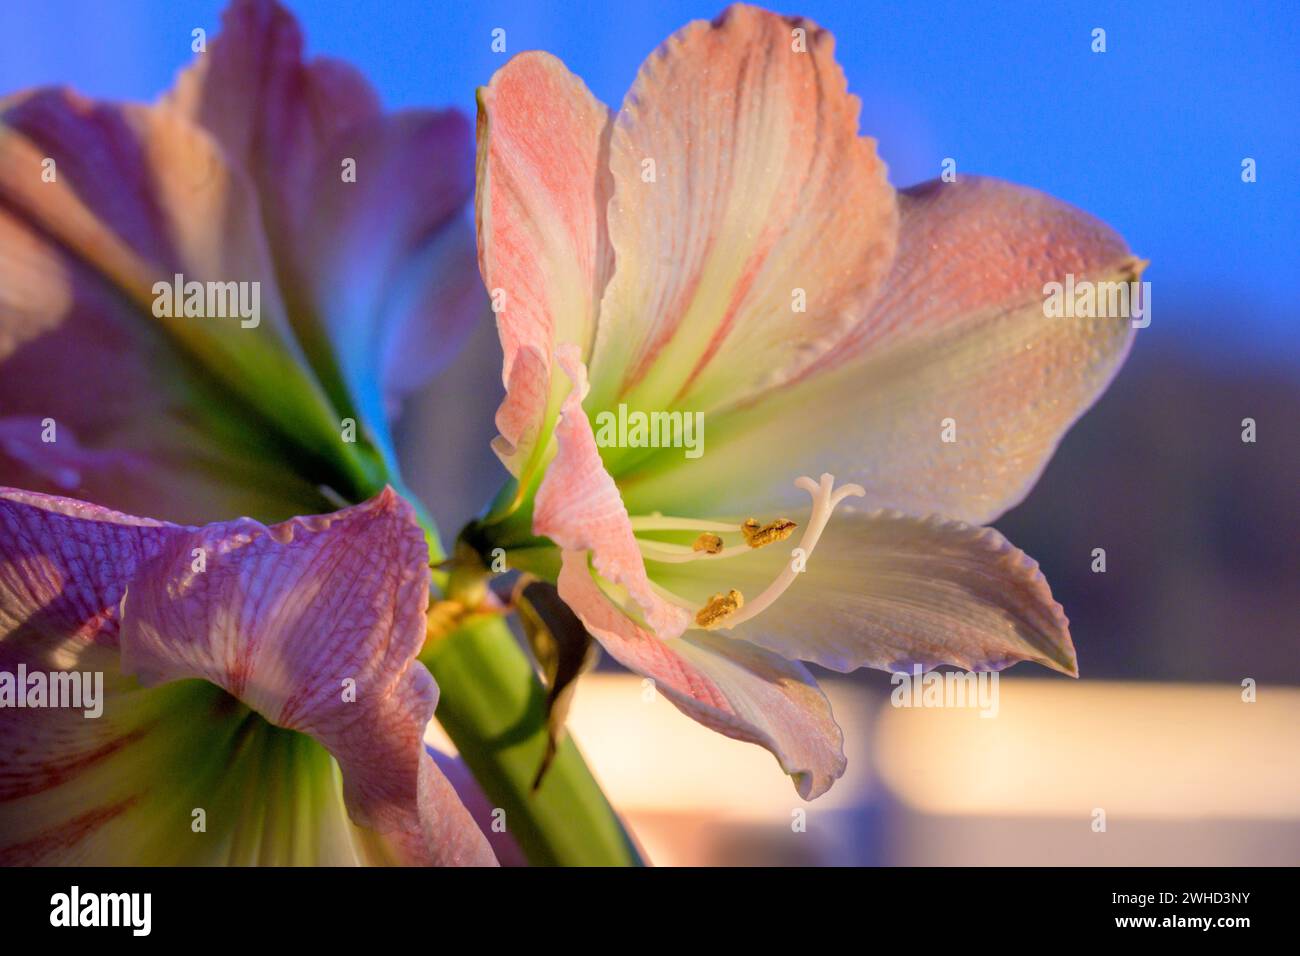 Amaryllis, a plant genus of the amaryllis family (Amaryllidaceae) Stock Photo